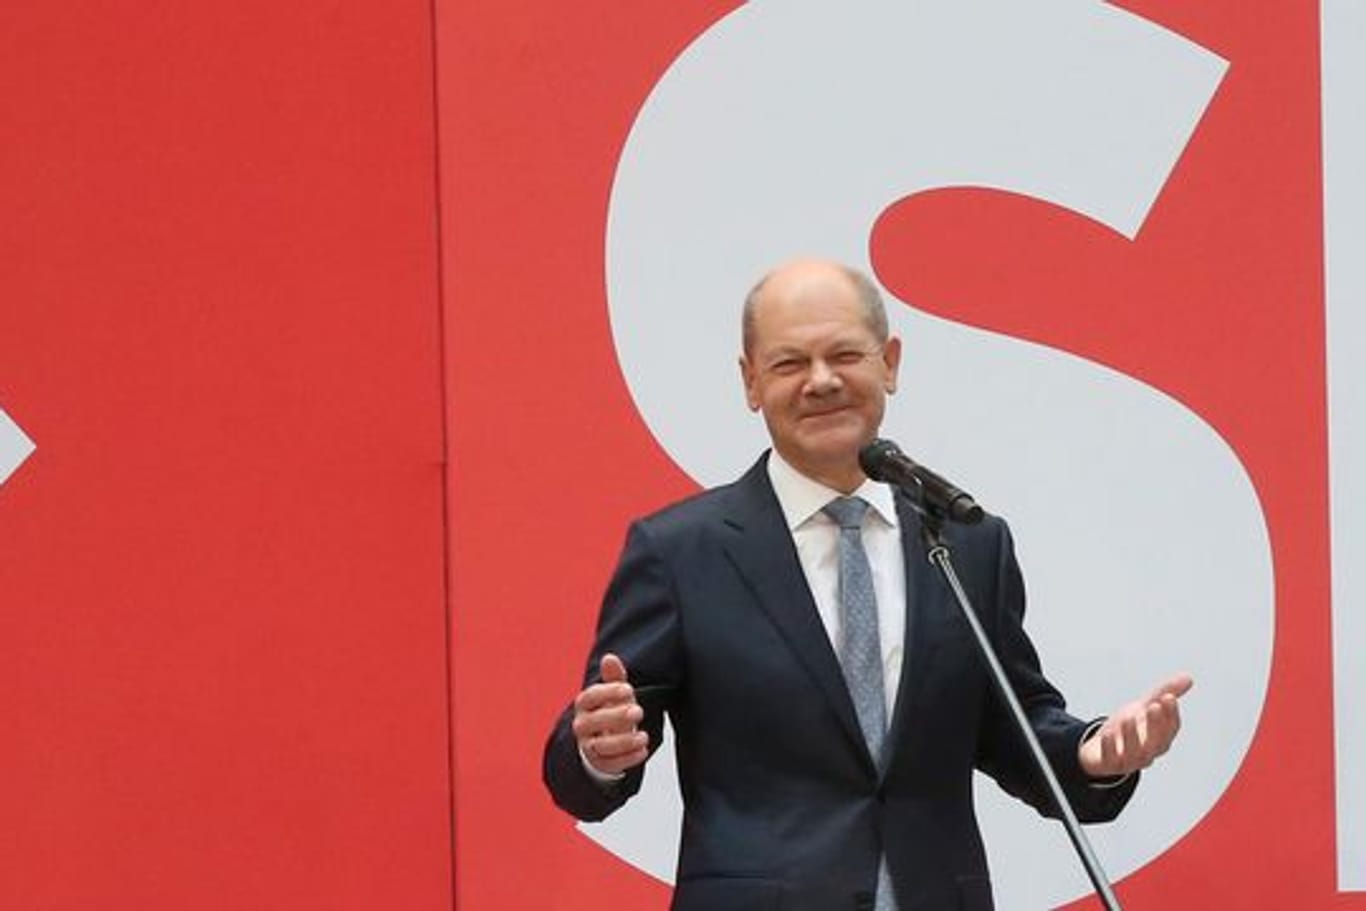 SPD-Kanzlerkandidat Olaf Scholz sieht für seine Partei einen "sichtbaren Auftrag" zur Regierungsbildung.